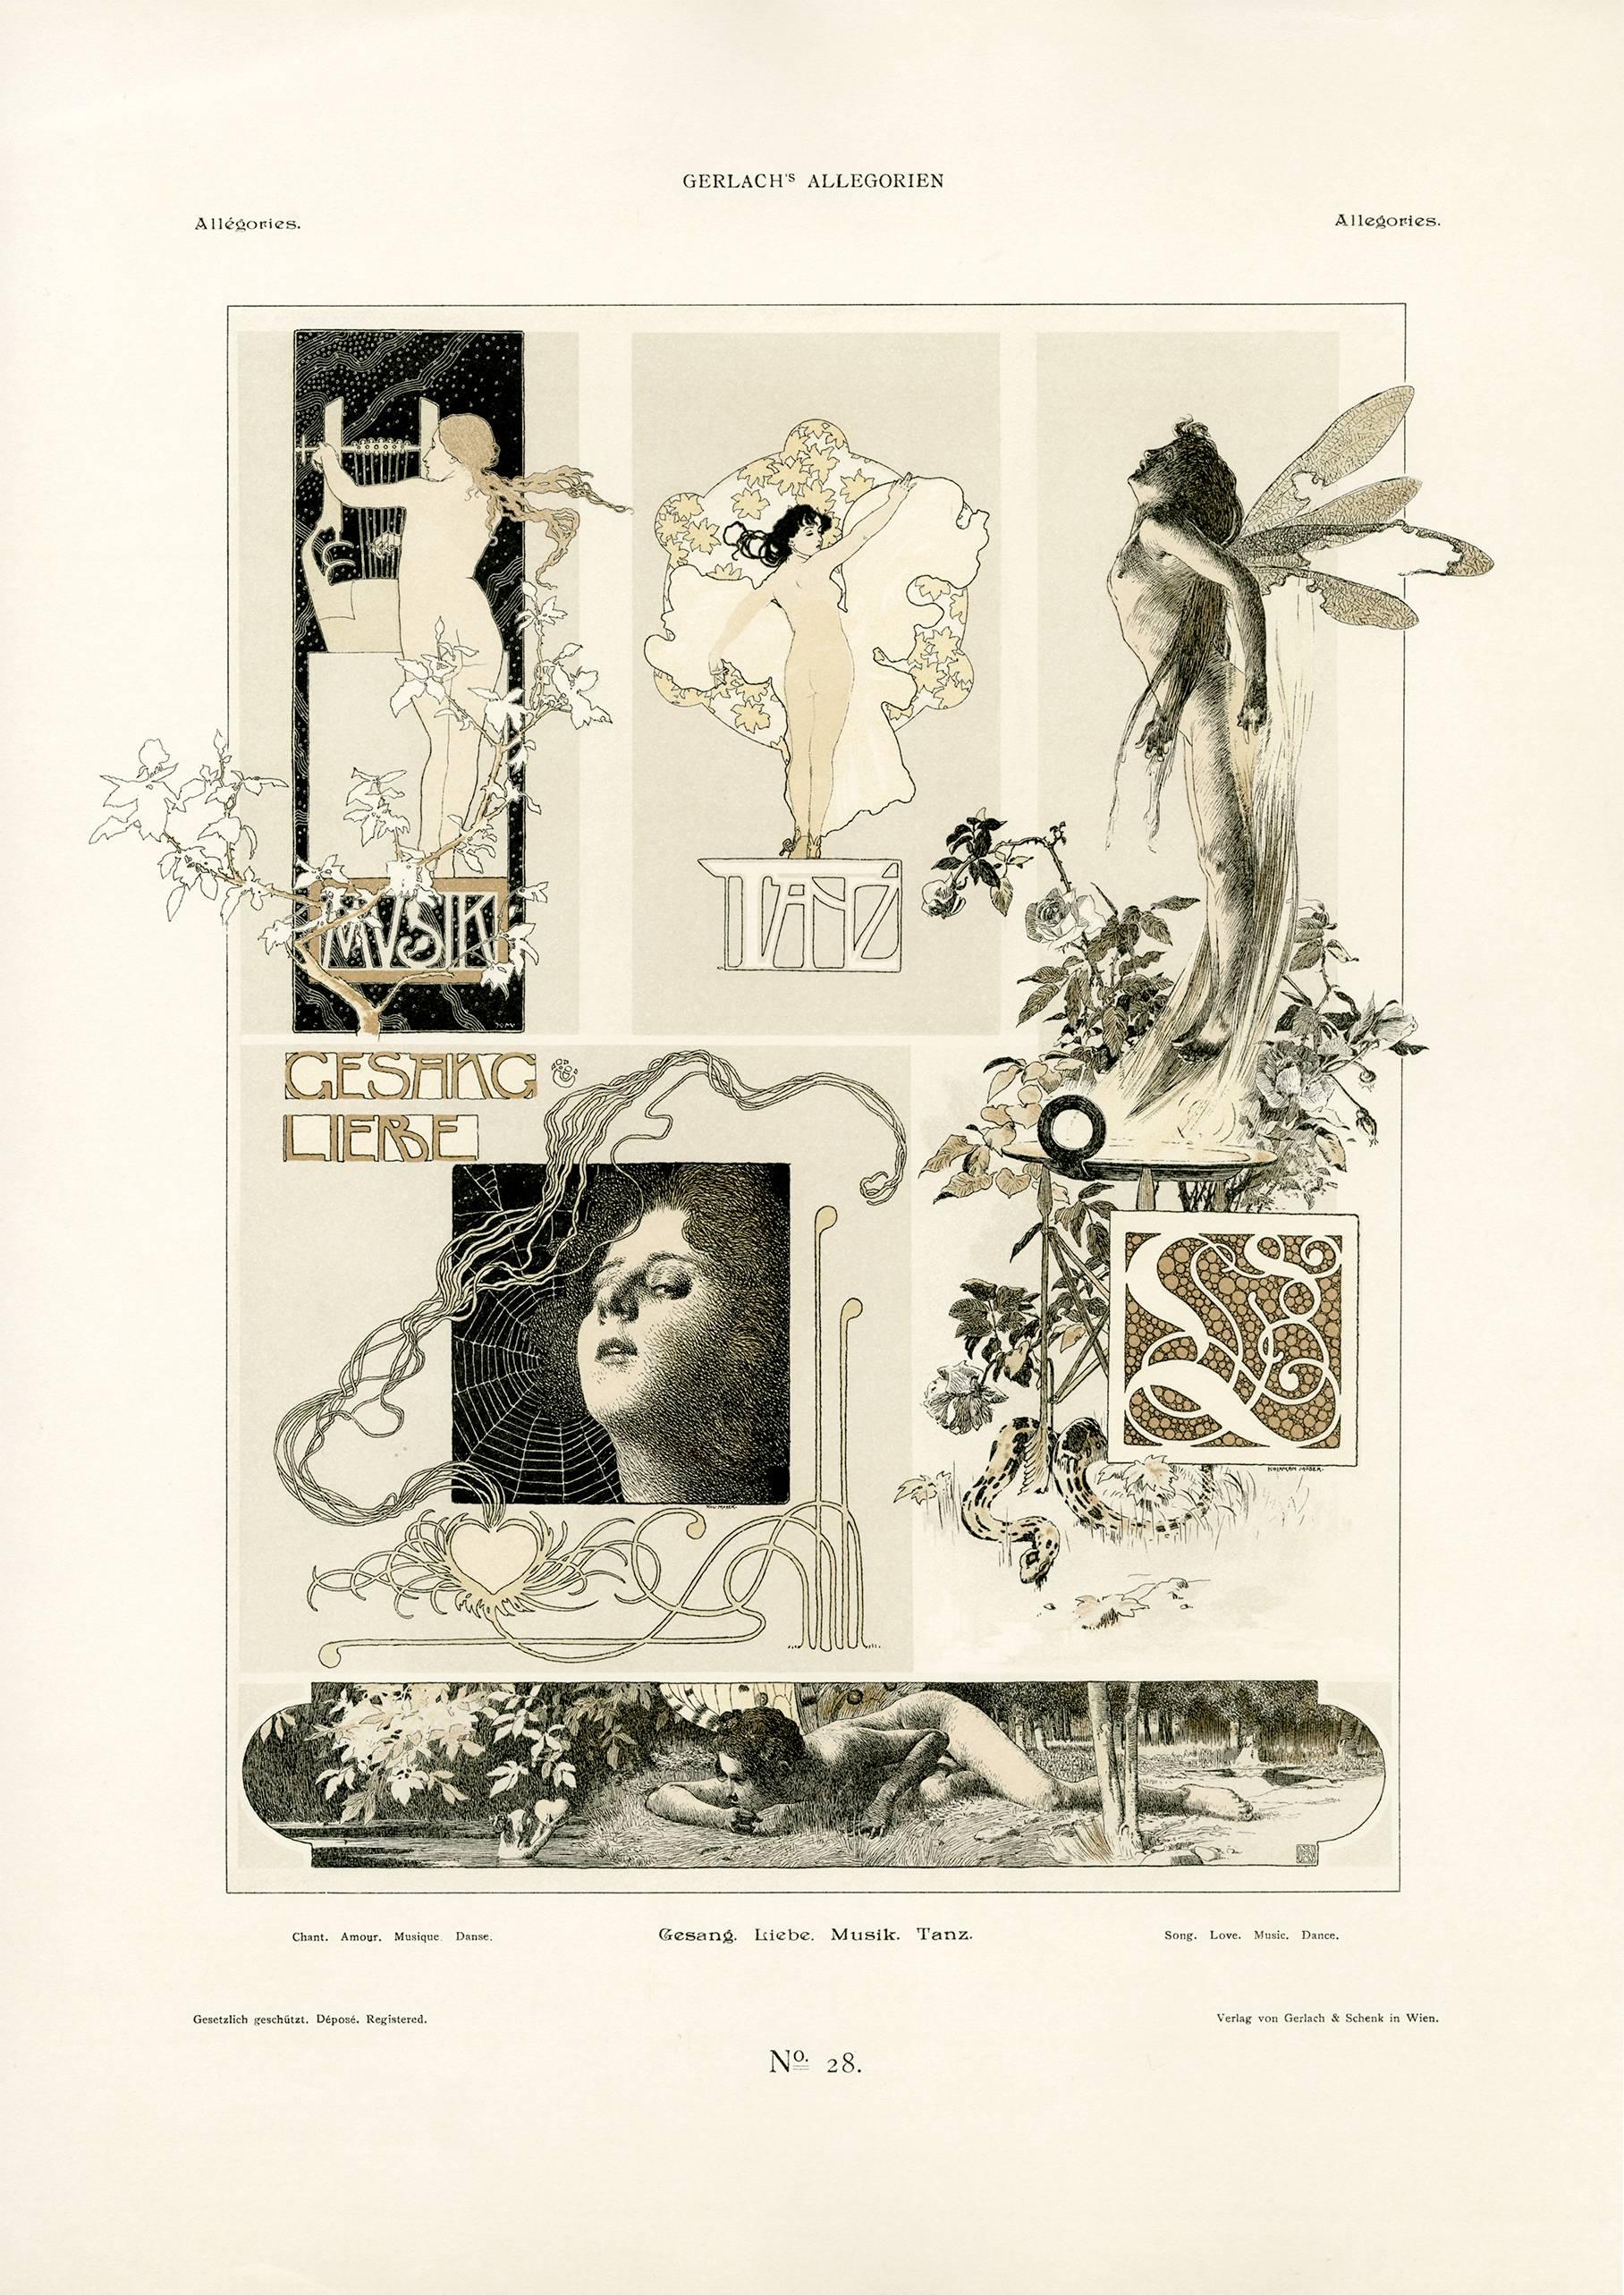 Gerlach's Allegorien Plate #20: "Song, Love, Music, Dance" Lithograph